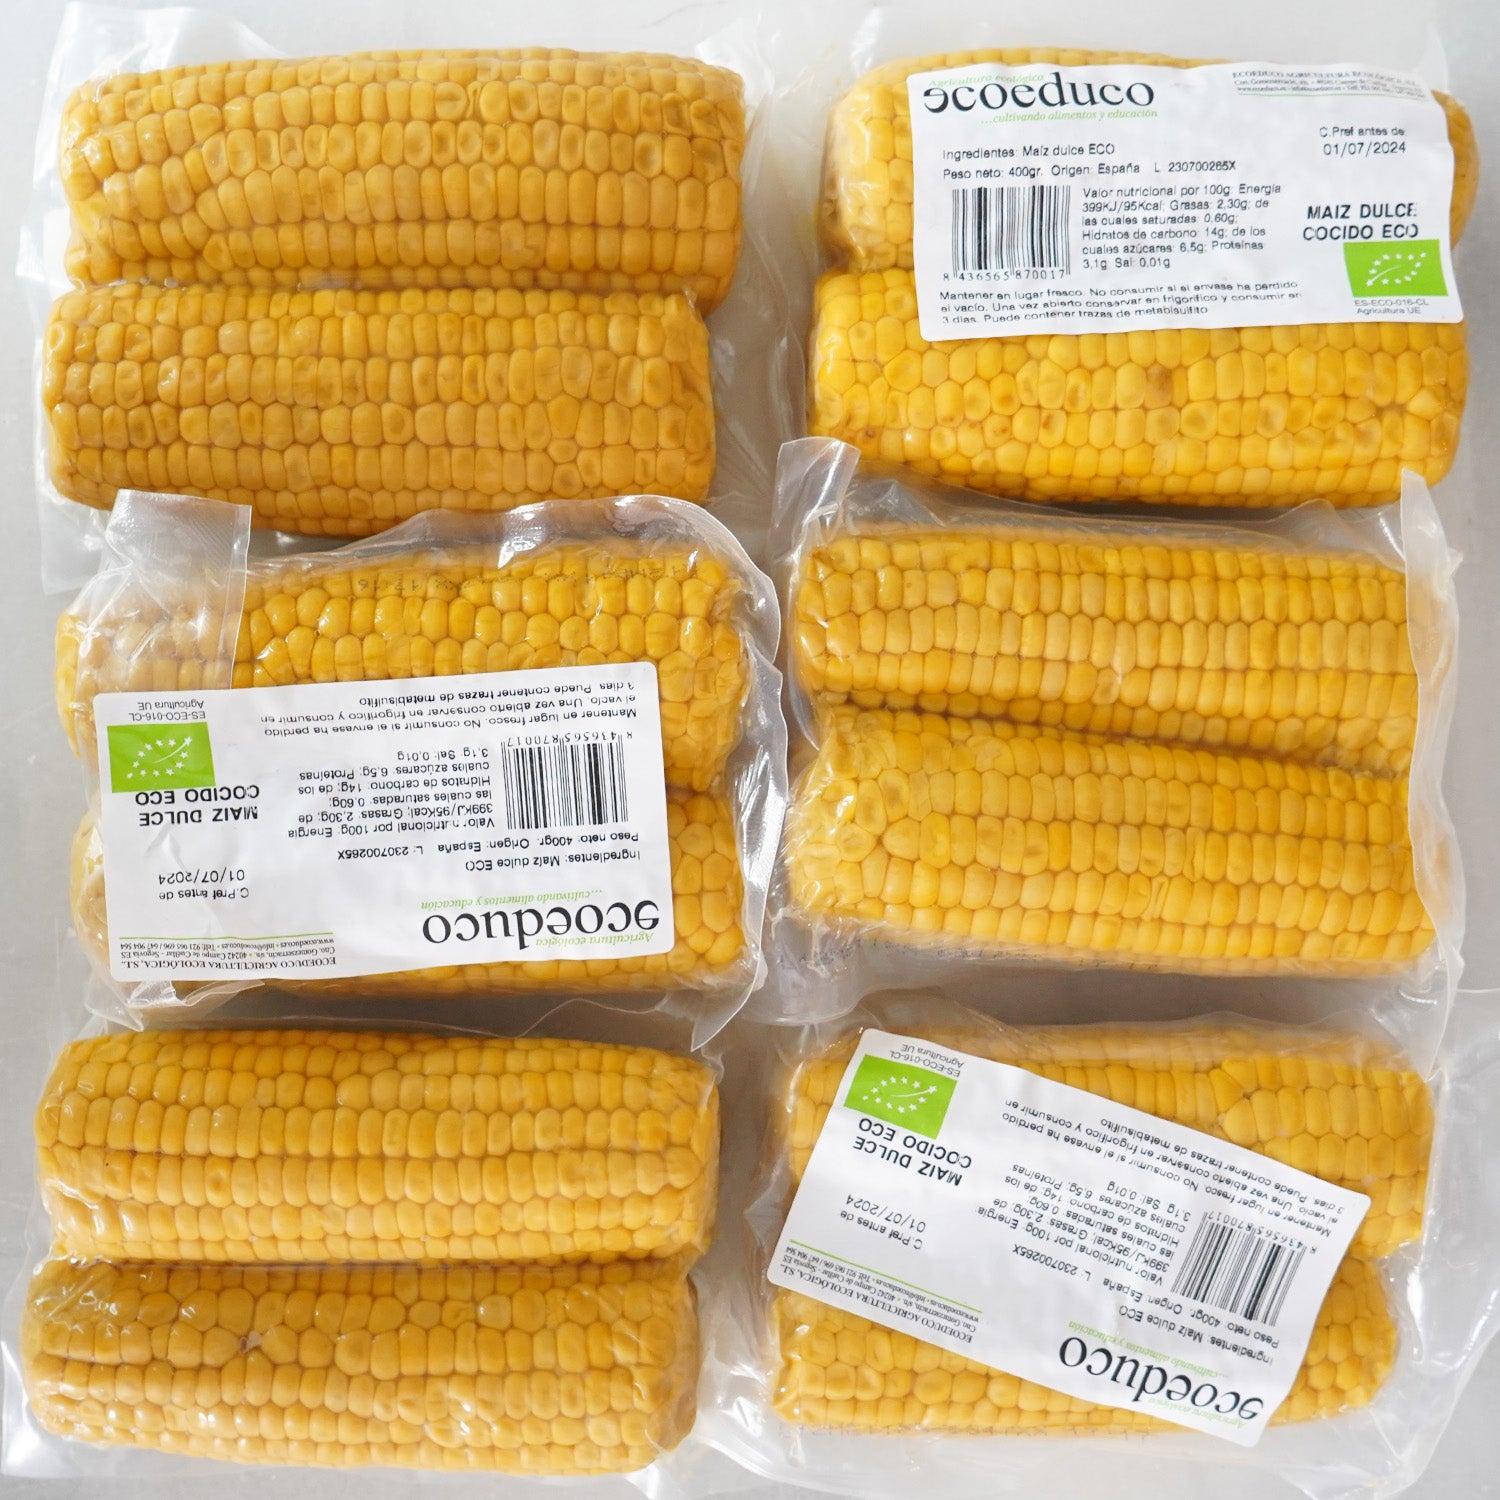 Varios paquetes de dos mazorcas de maíz cocidas y envasadas al vacío